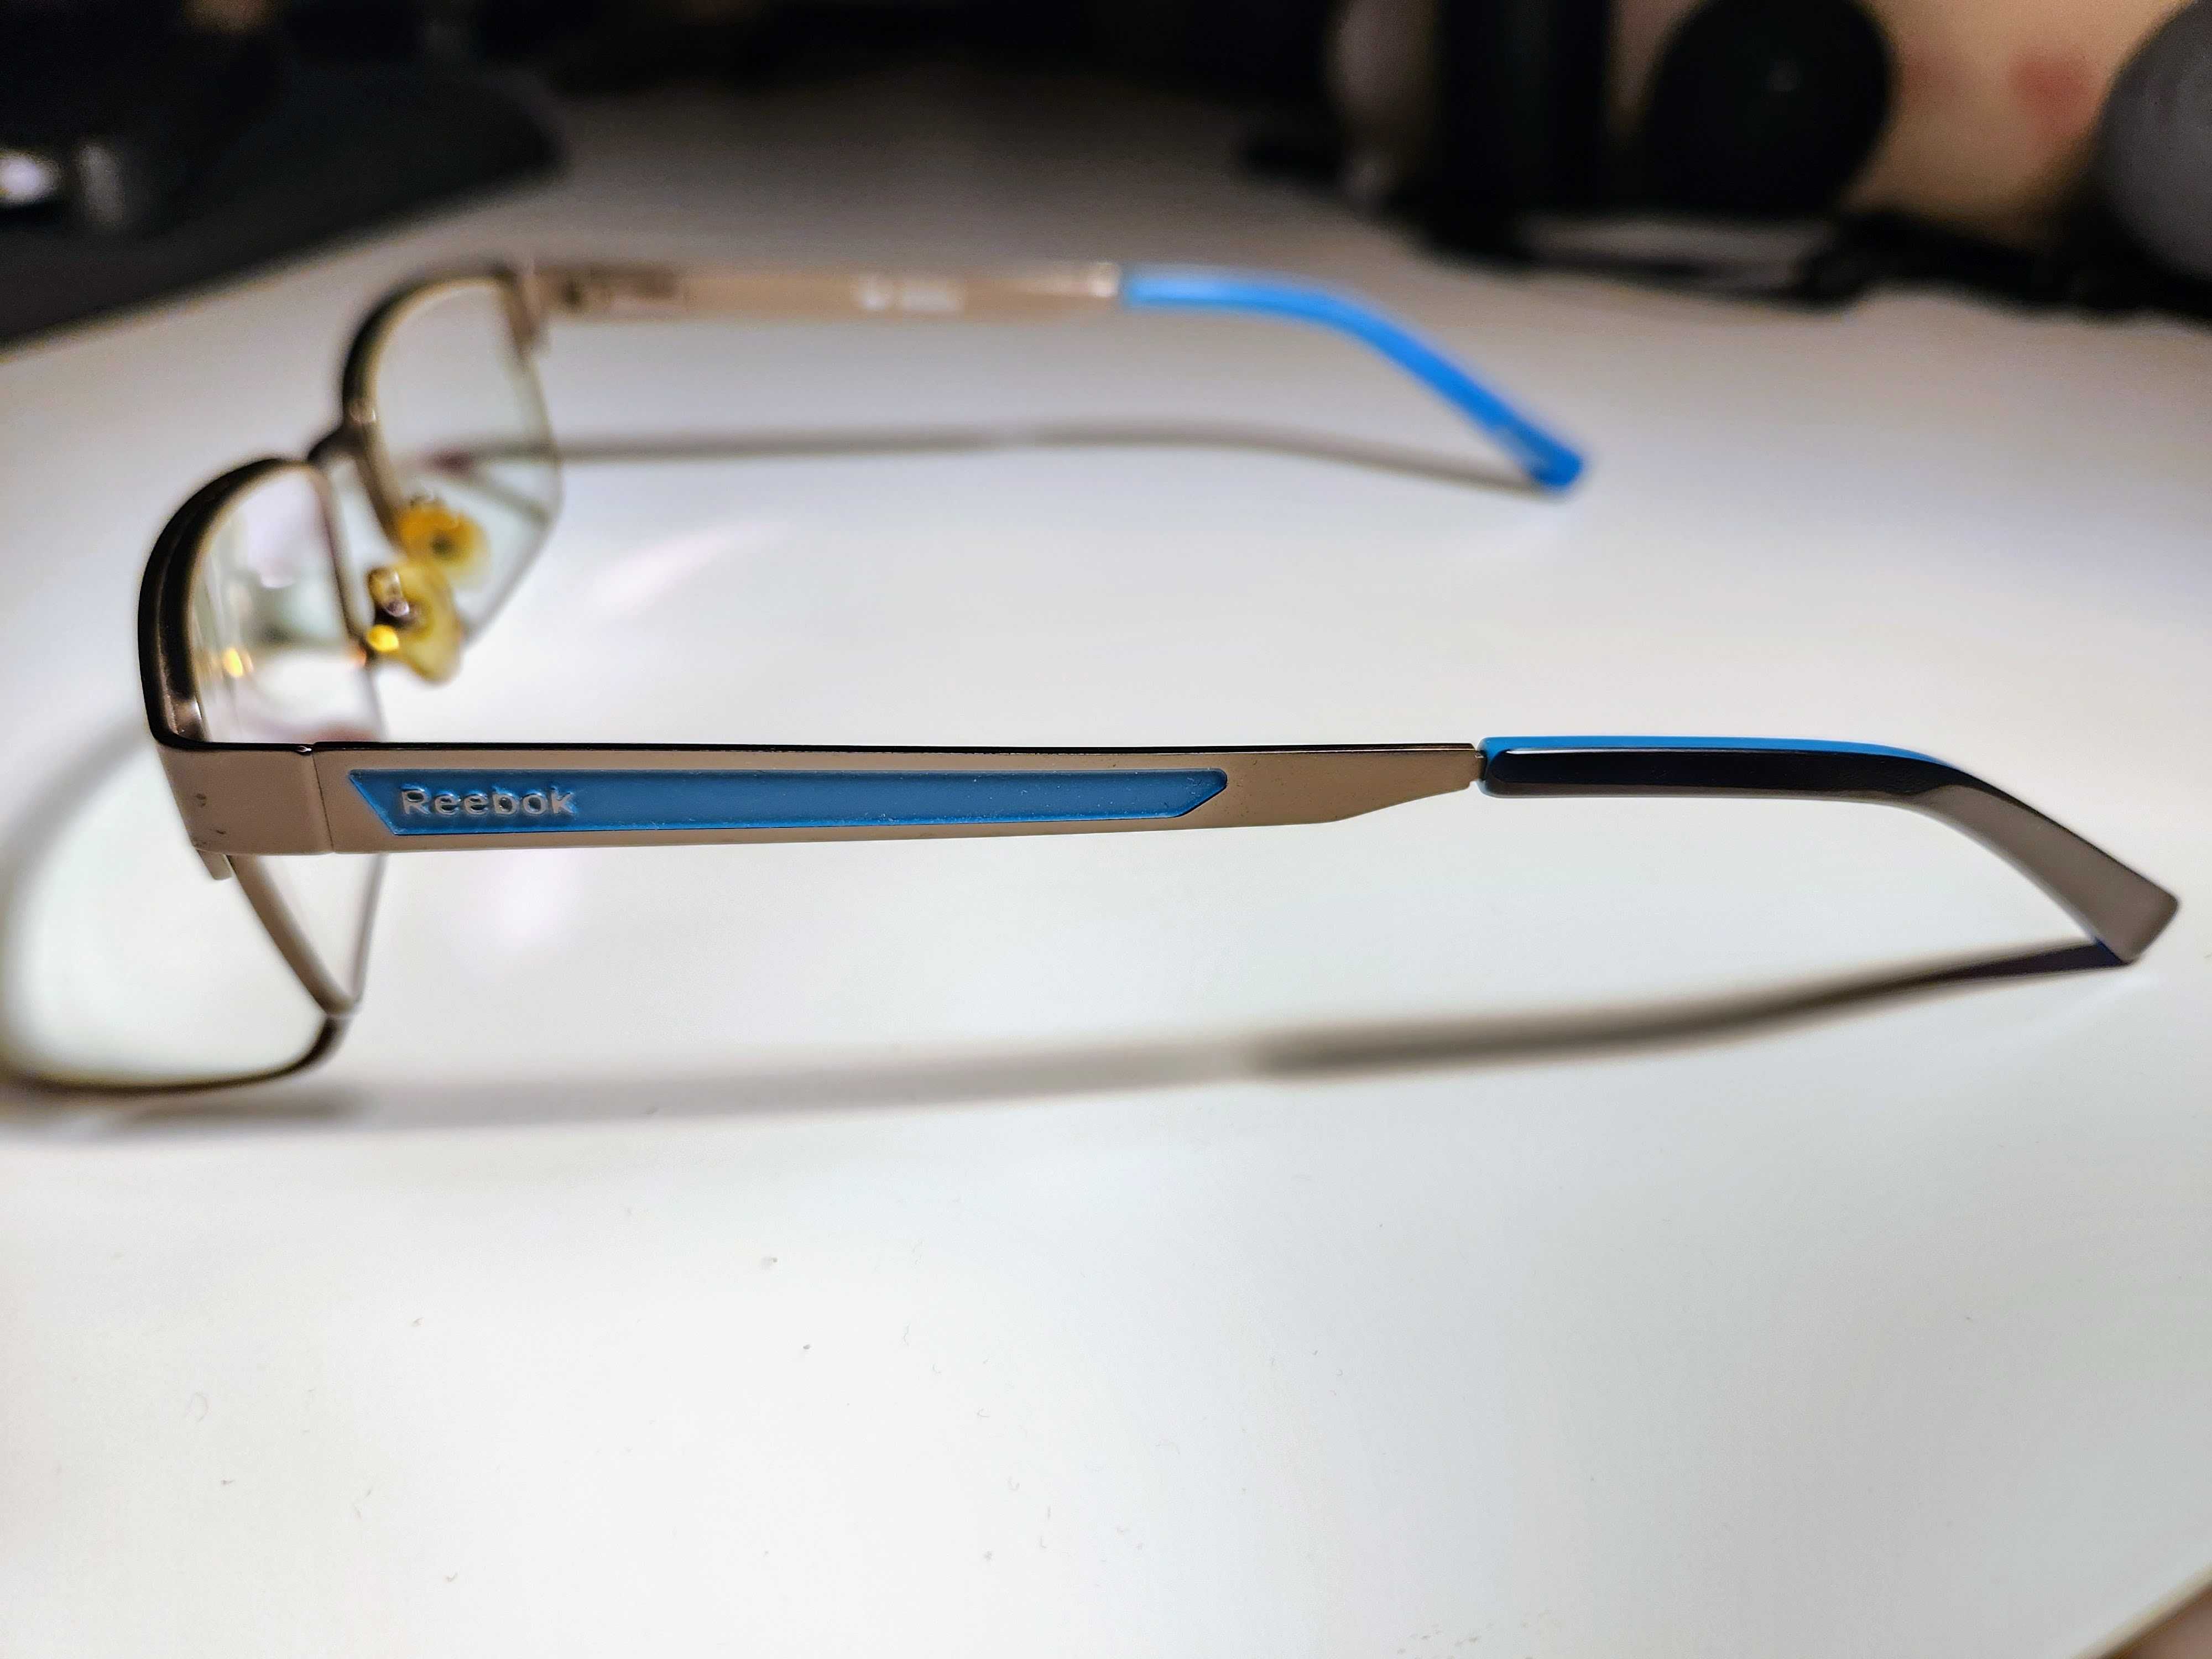 Рамки за очила Reebok R2030/02 - Метални - Правоъгълни - Unisex